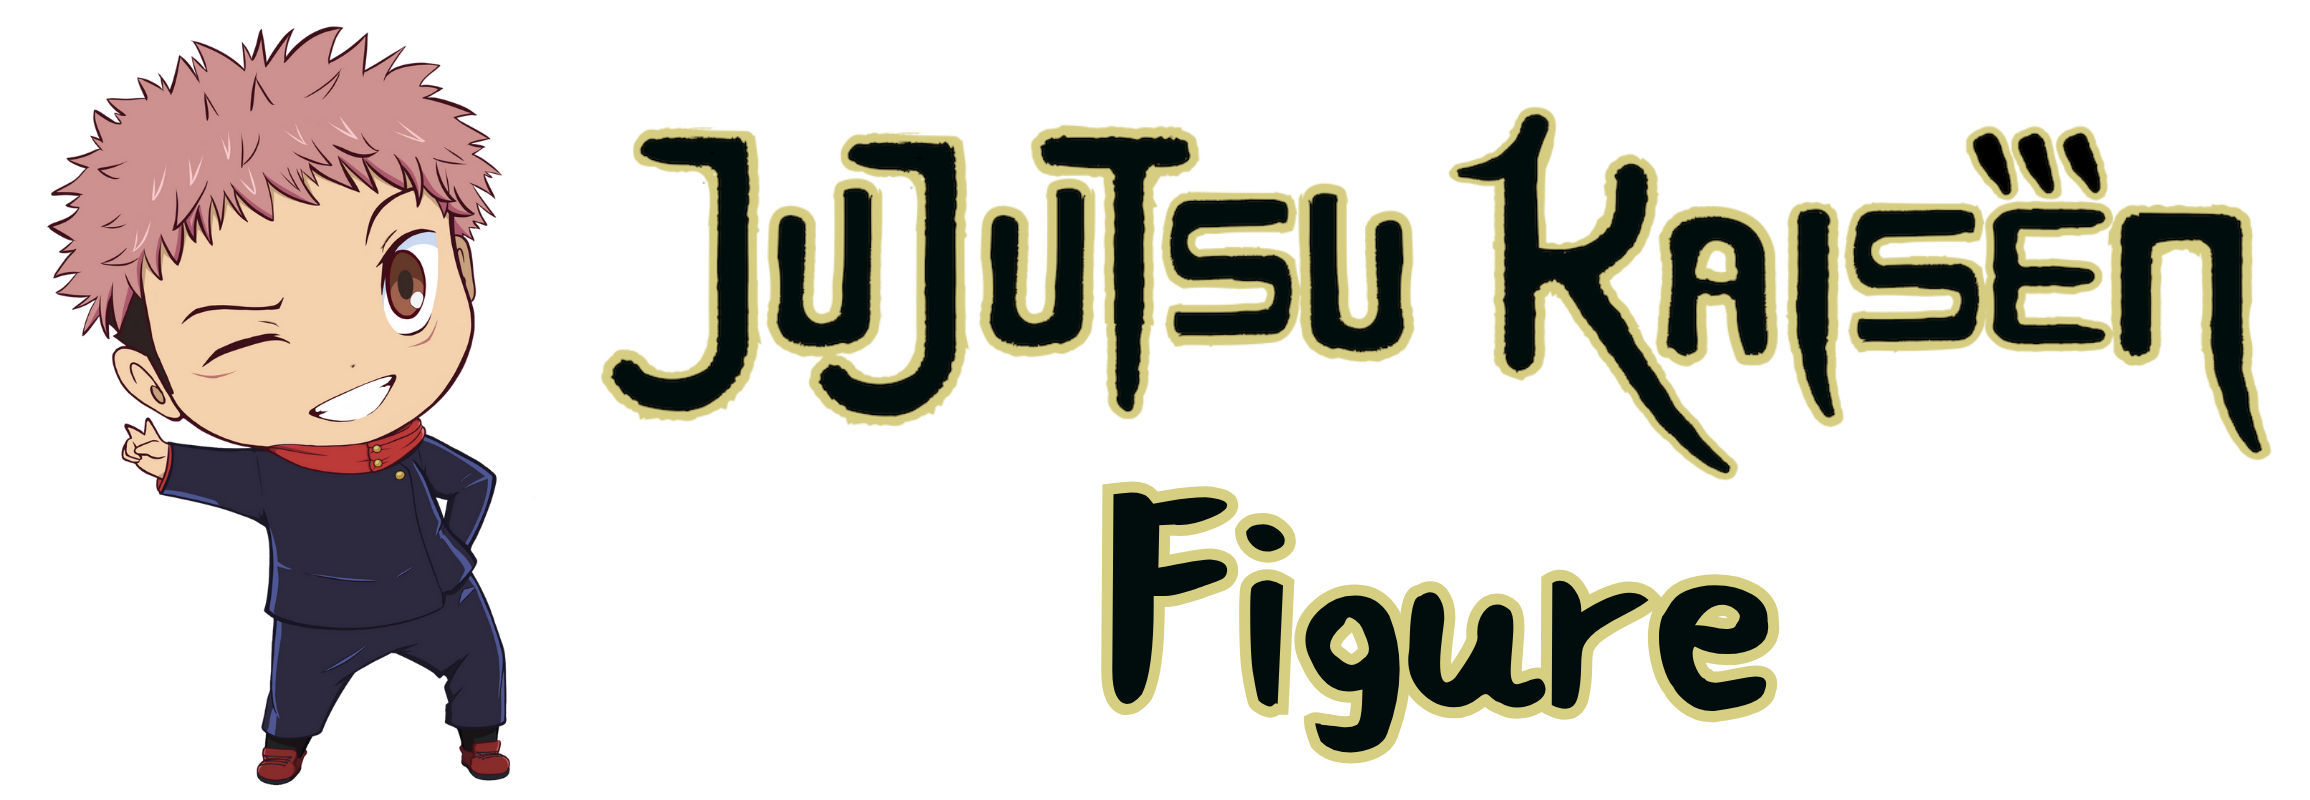 jujutsu kaisen figure logo 1 - Jujutsu Kaisen Figure